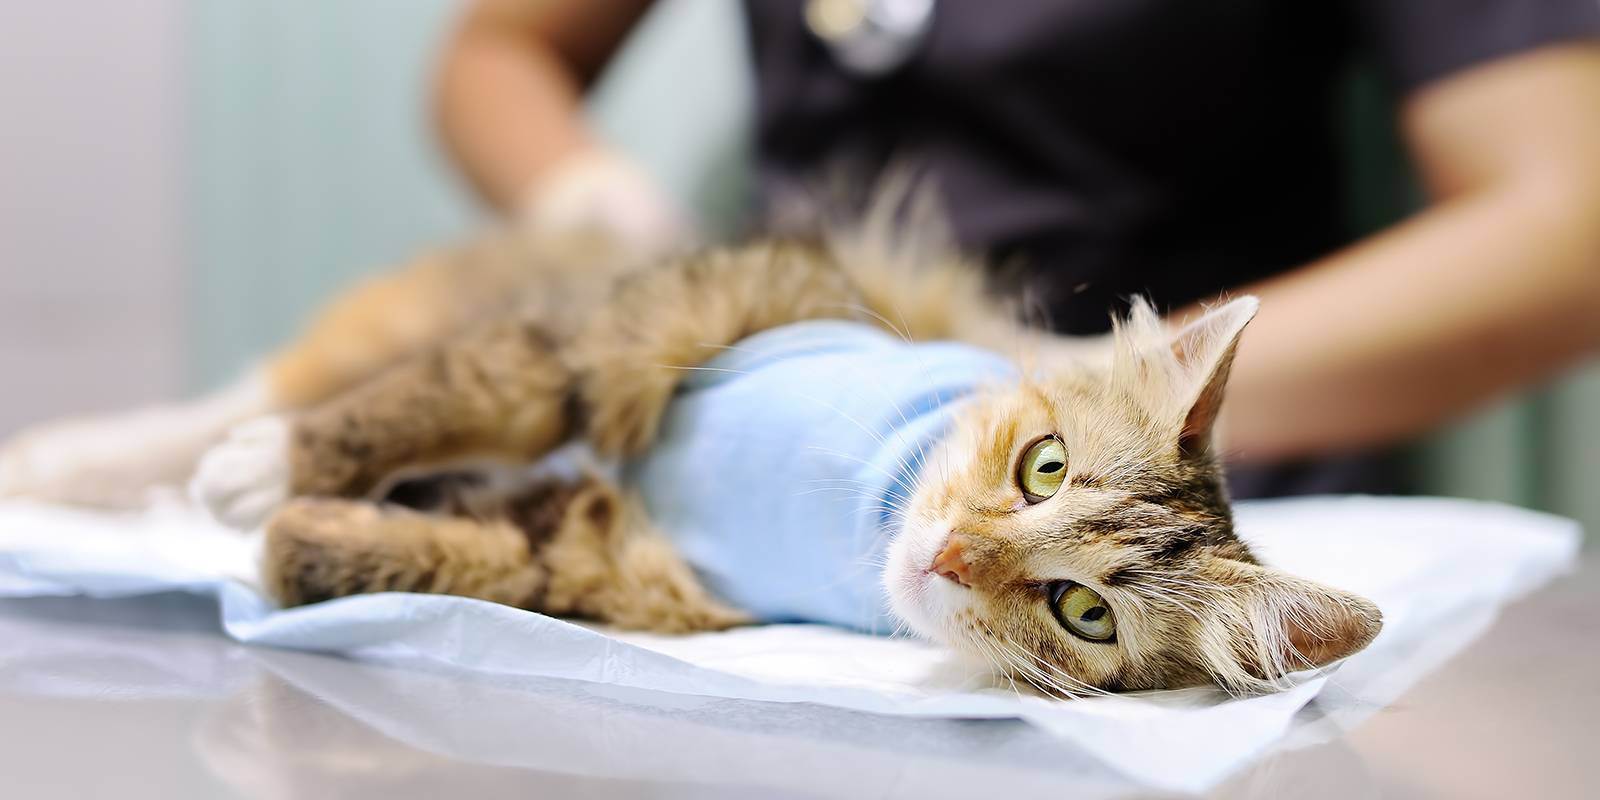 Нужно ли стерилизовать кошку, если она не рожала и живет в квартире?